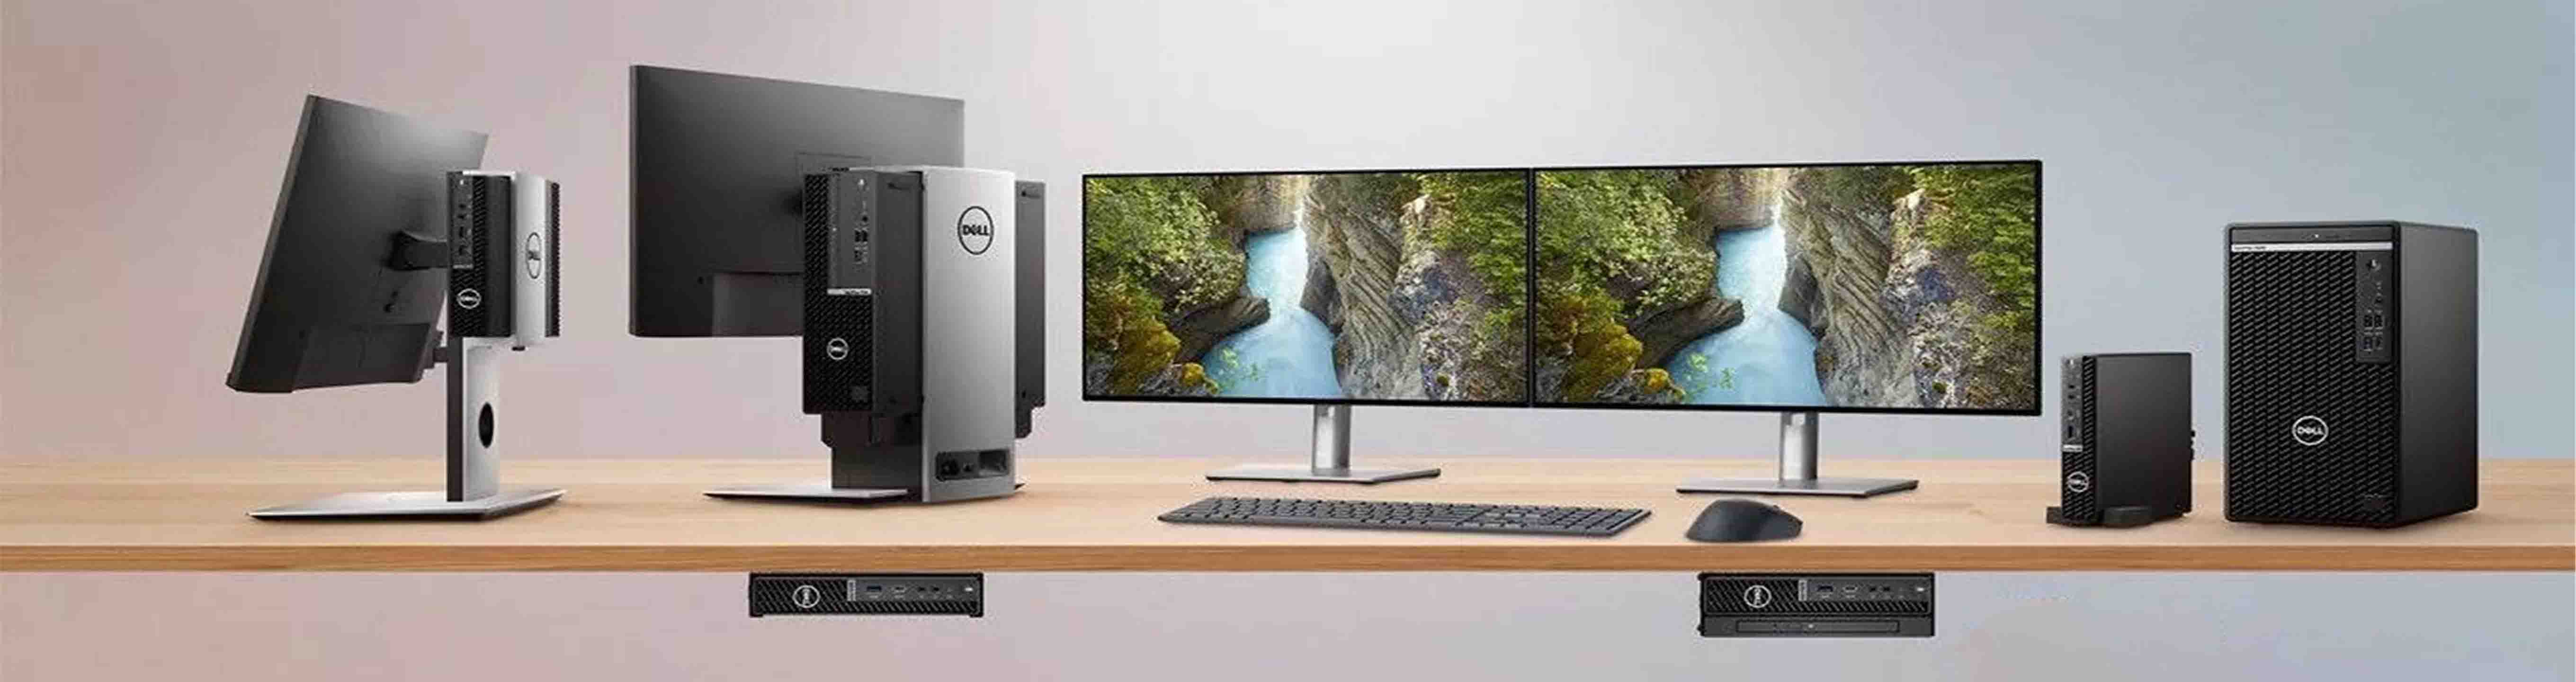 Dell refurbished desktop